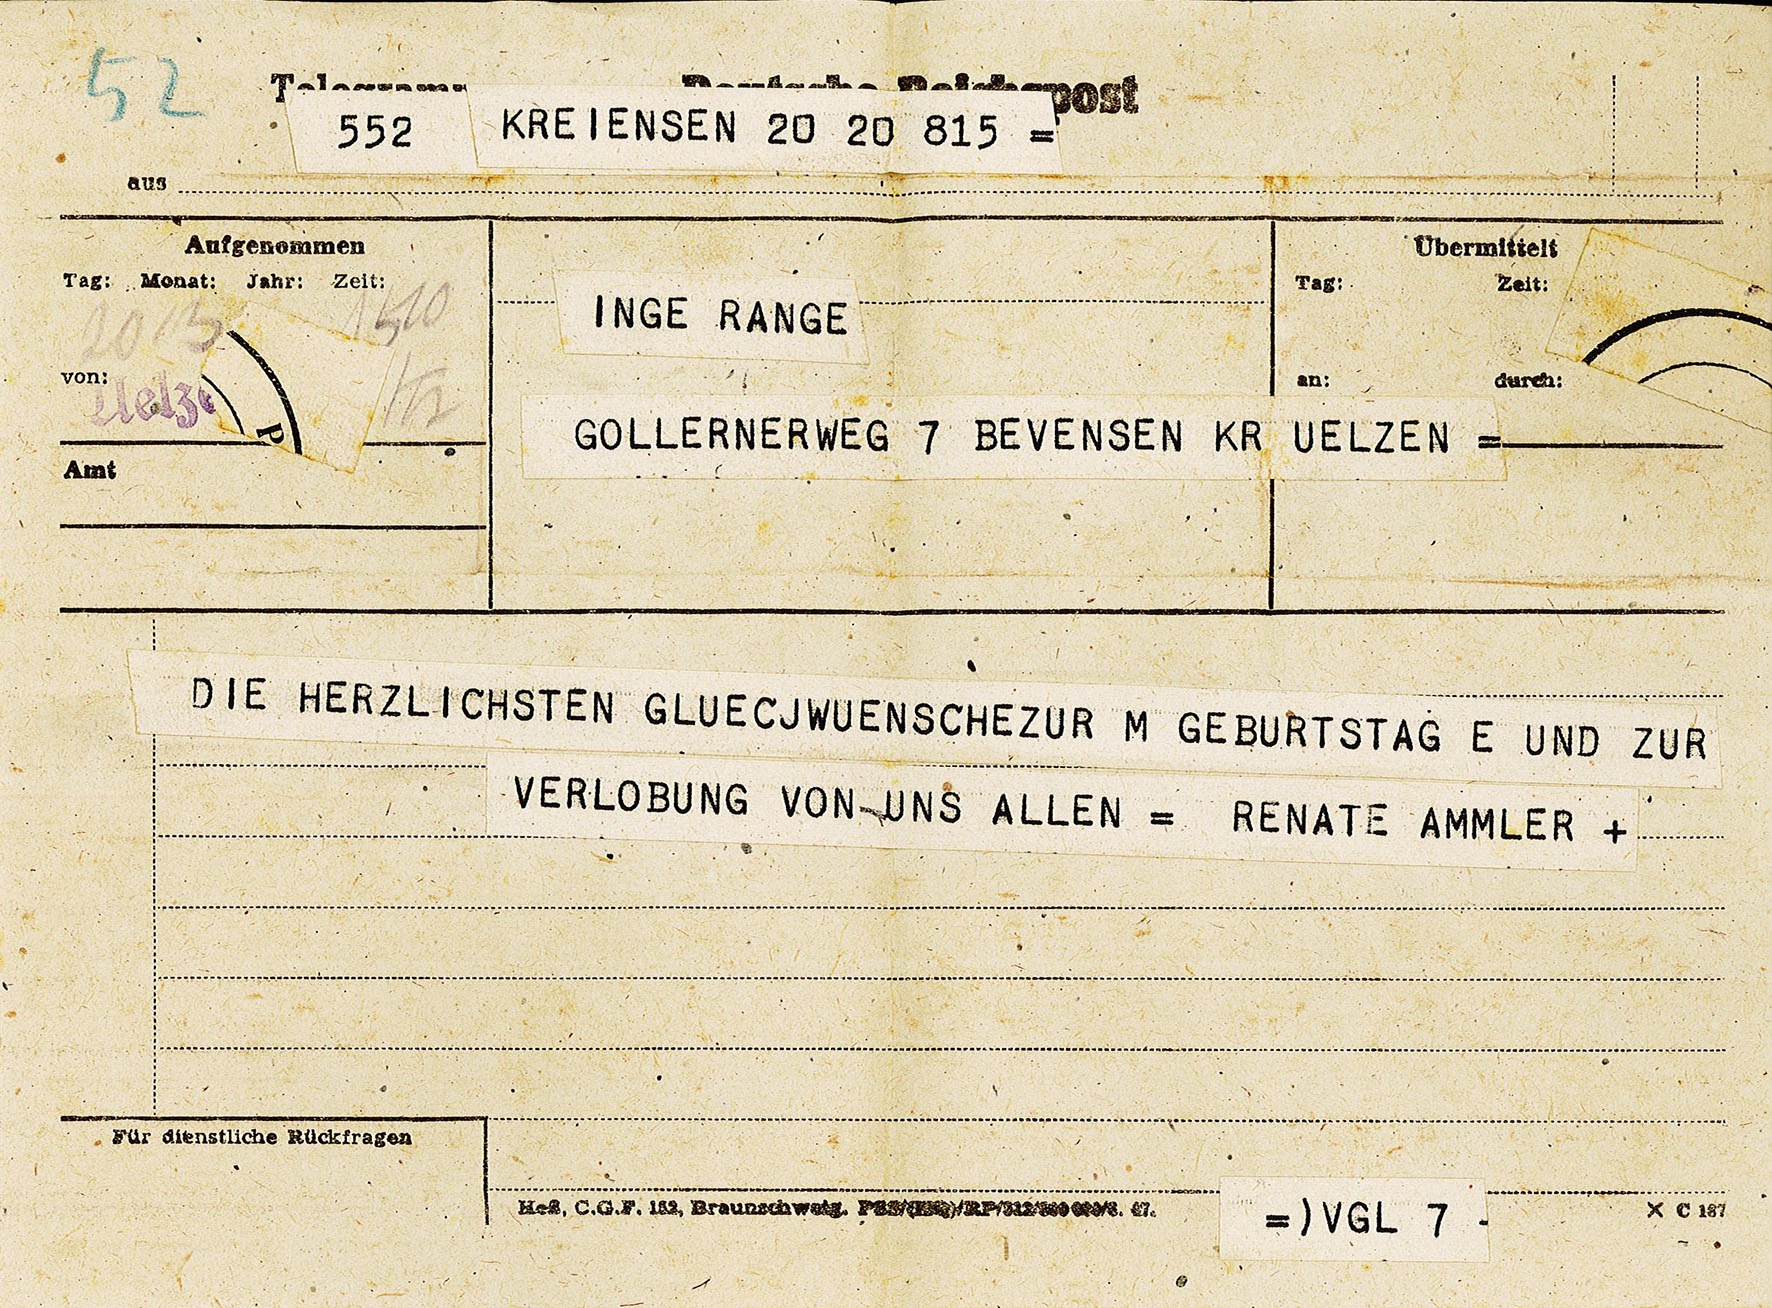 Glückwunschtelegramm zur Verlobung an Ingeborg Range von Renate Ammler, 20.03.1948 (Museum Wolmirstedt RR-F)